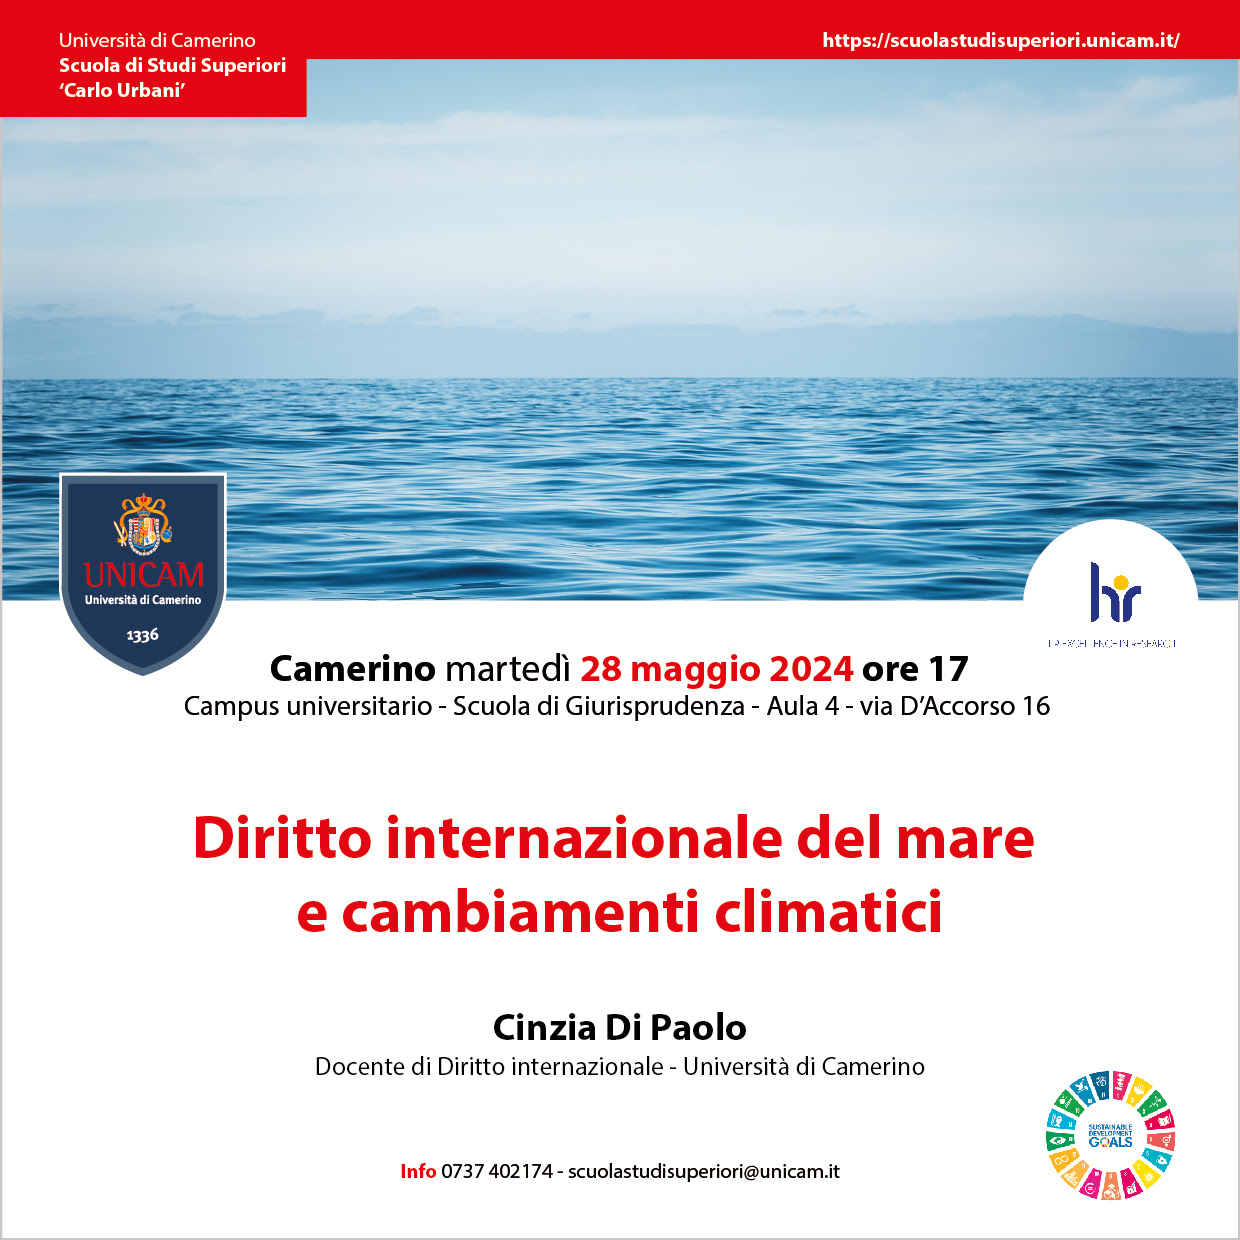 Prof.ssa Di Paolo: "Diritto internazionale del mare e cambiamenti climatici"